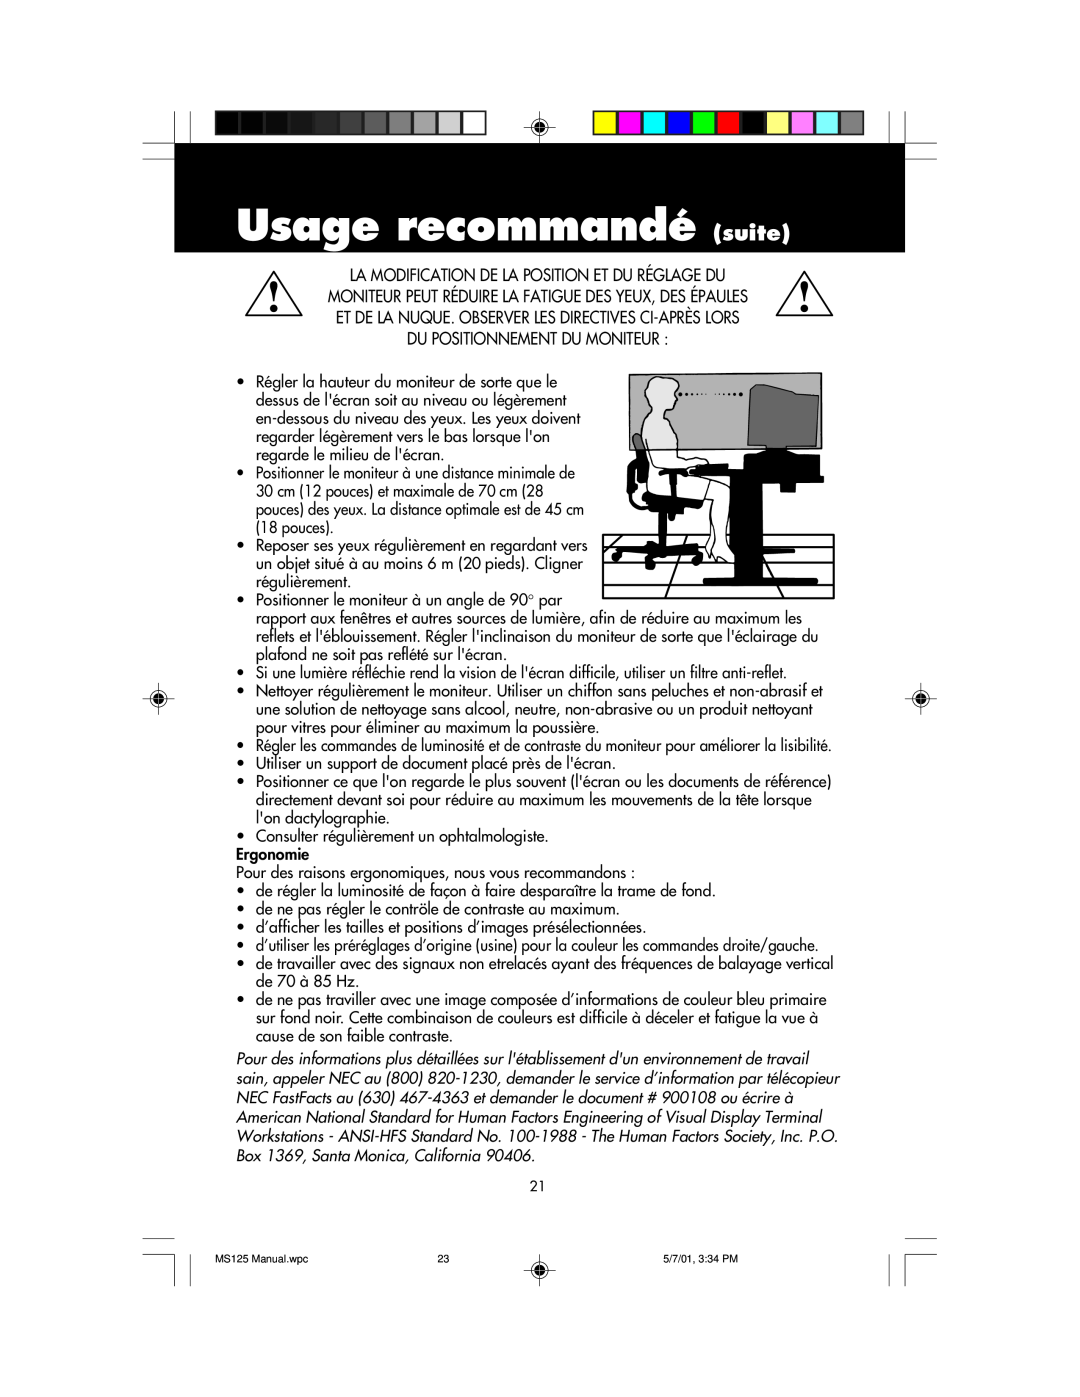 NEC MS125 manual Usage recommandé suite, La Modification De La Position Et Du Réglage Du, Du Positionnement Du Moniteur 